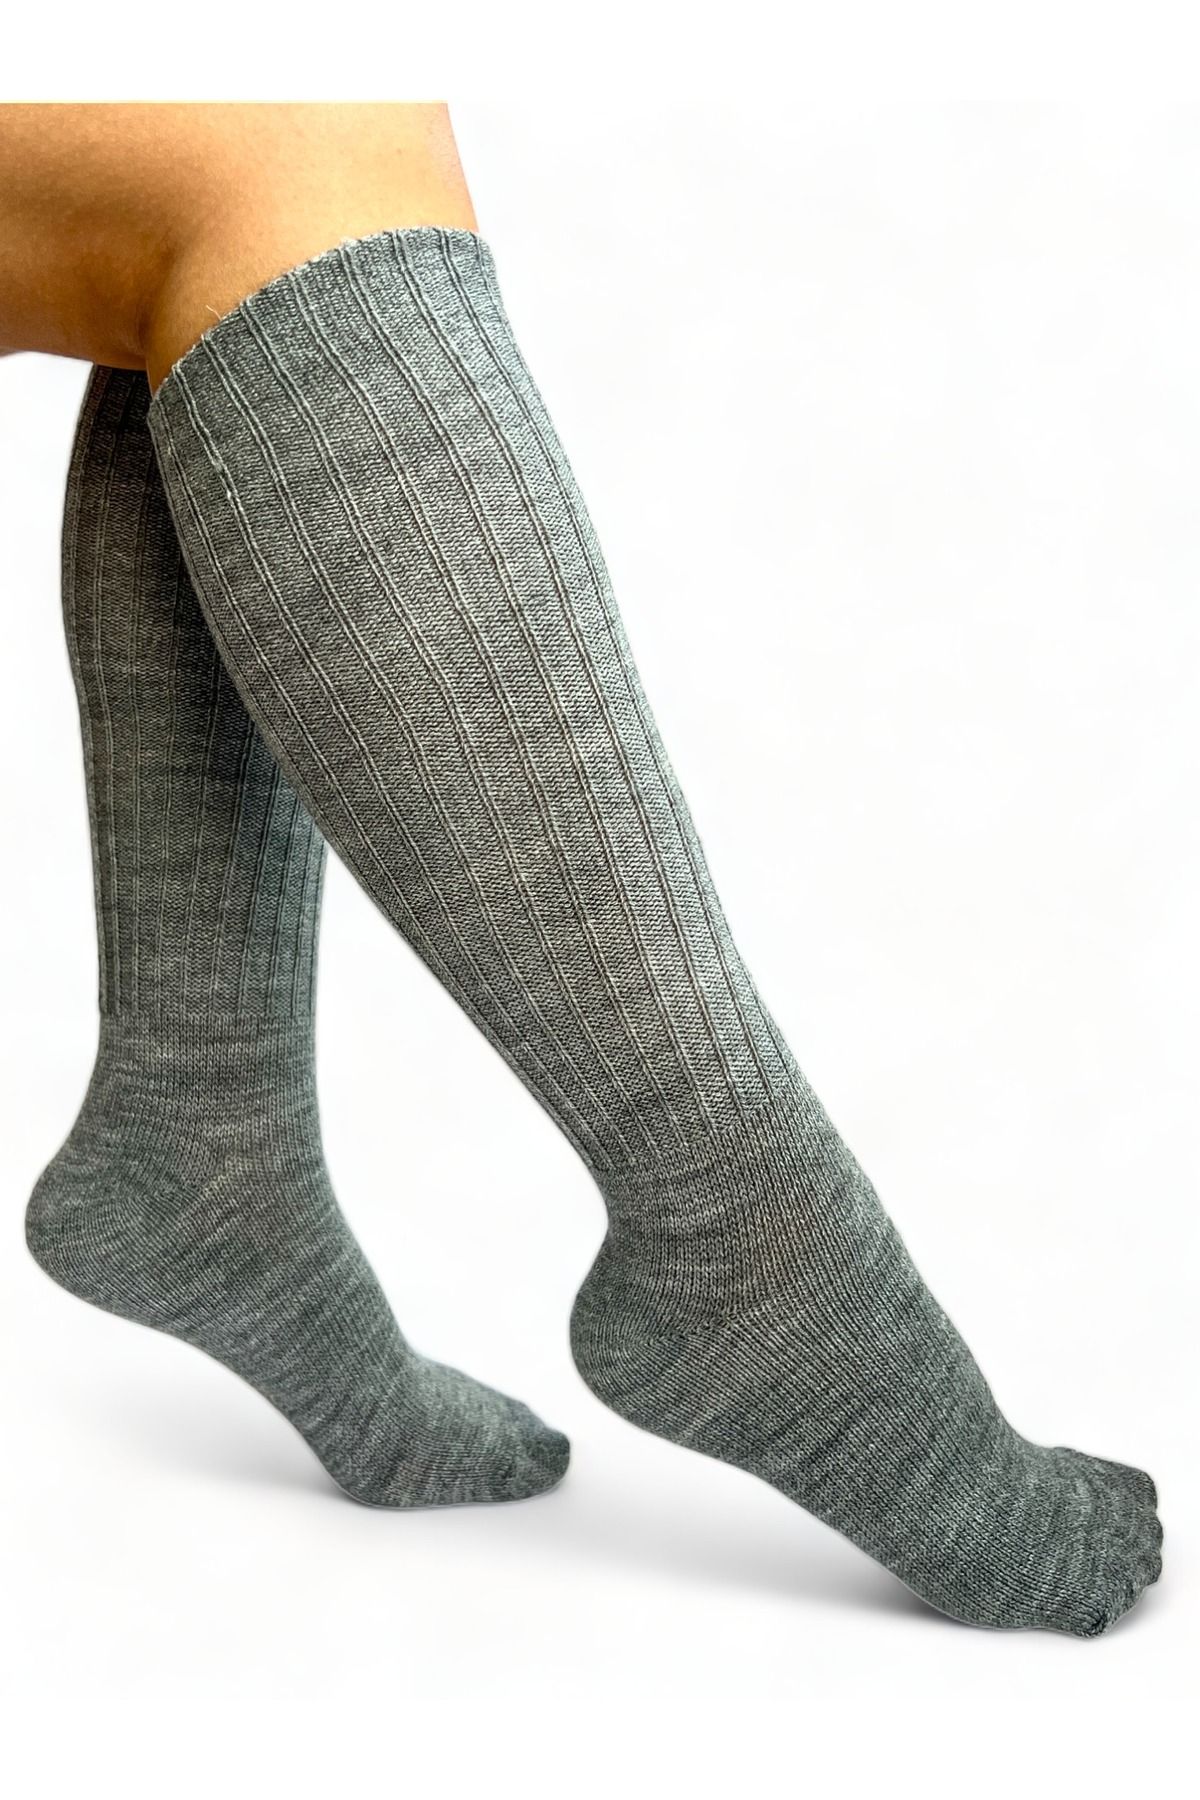 CİHO Ciho Socks Gri Uzun Diz Altı Kışlık Kadın Yünlü Çizme Uyku Çorabı Soft Touch